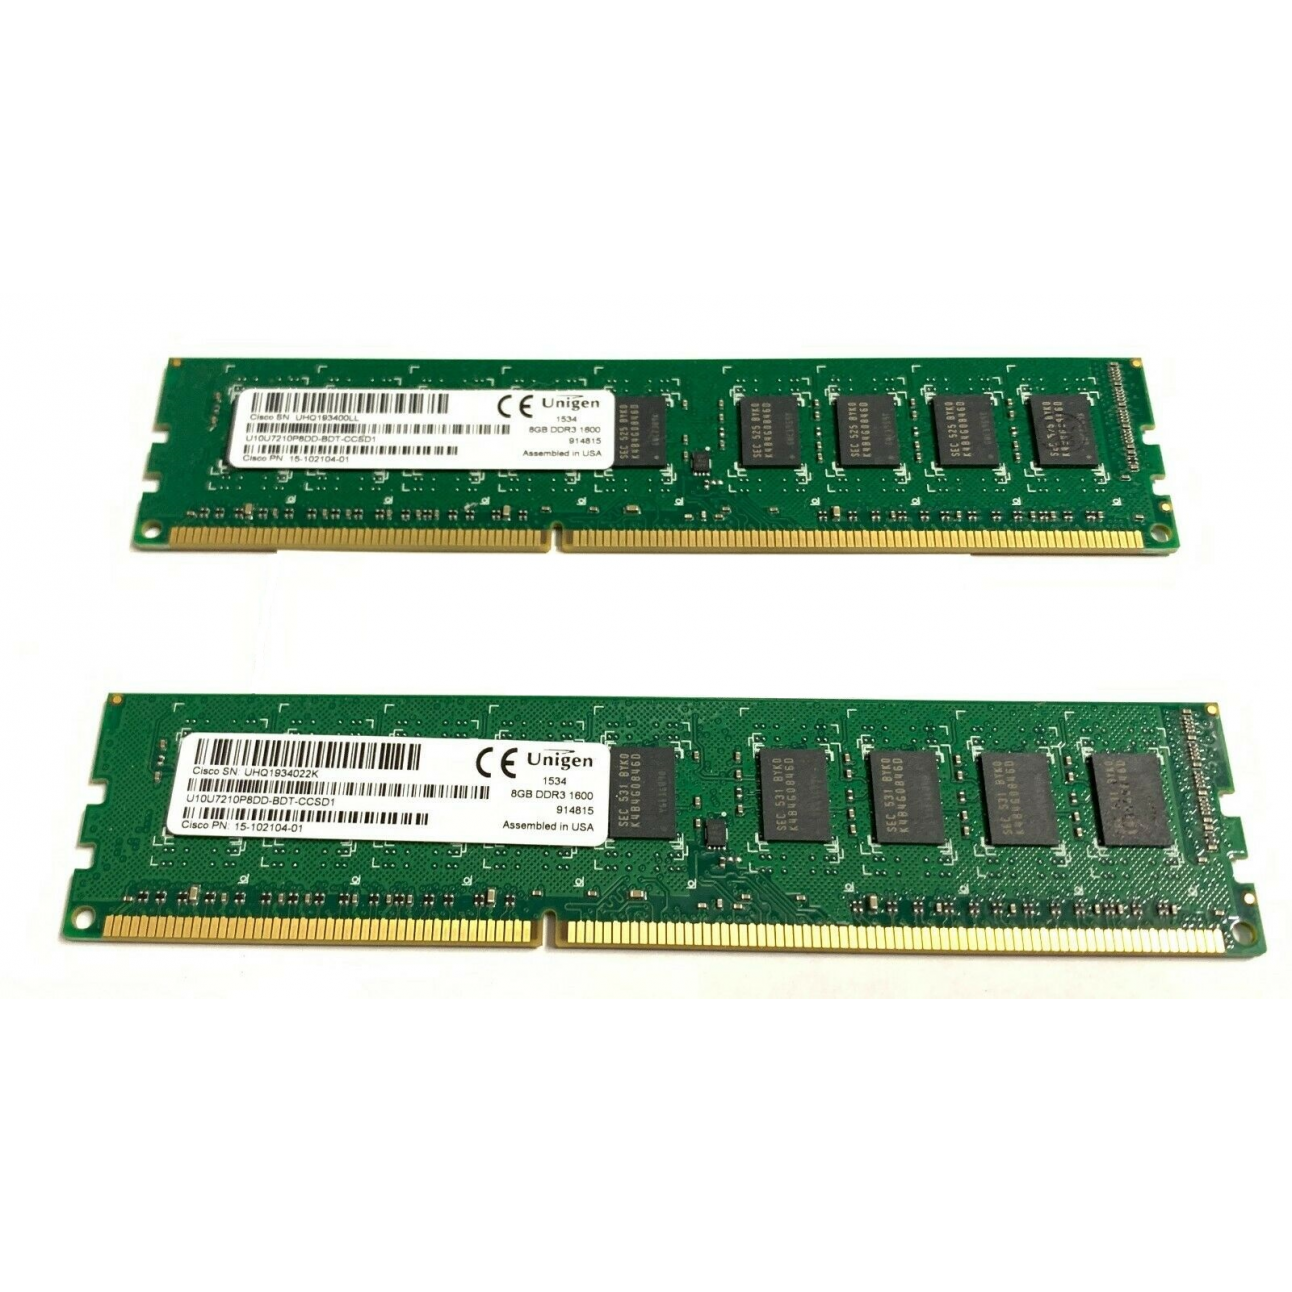 Память DRAM 16GB для Cisco ISR 4330 и 4350